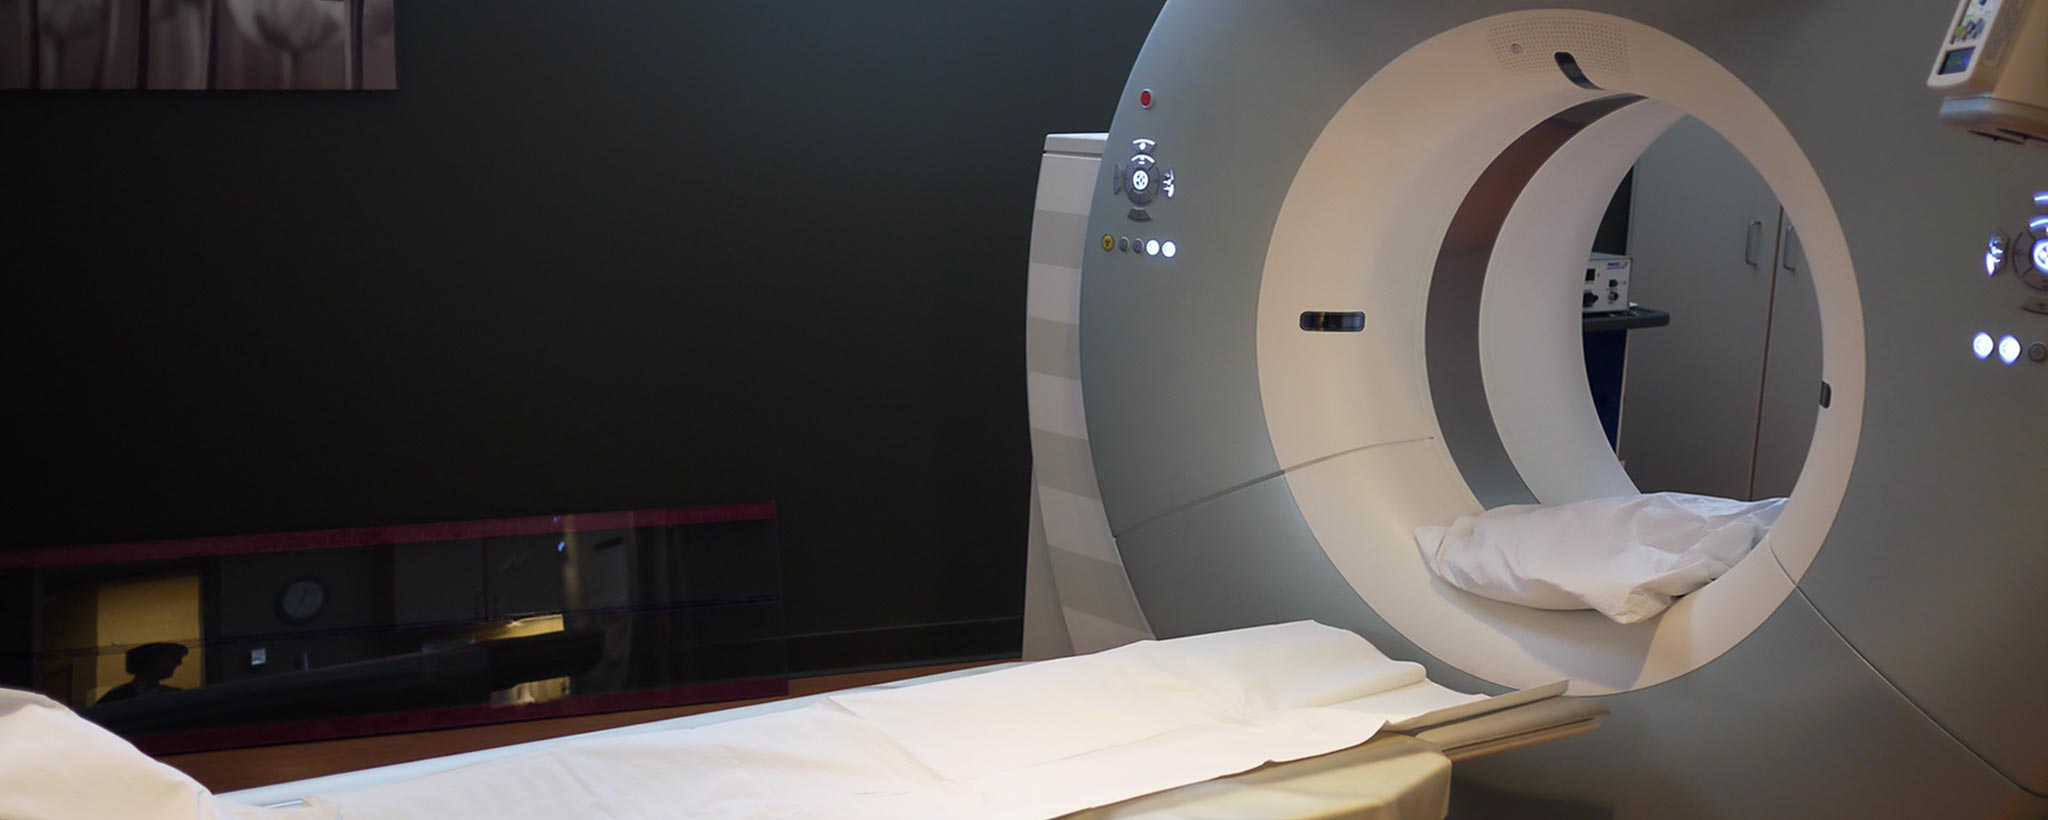 'CT and PET Scan vs MRI'